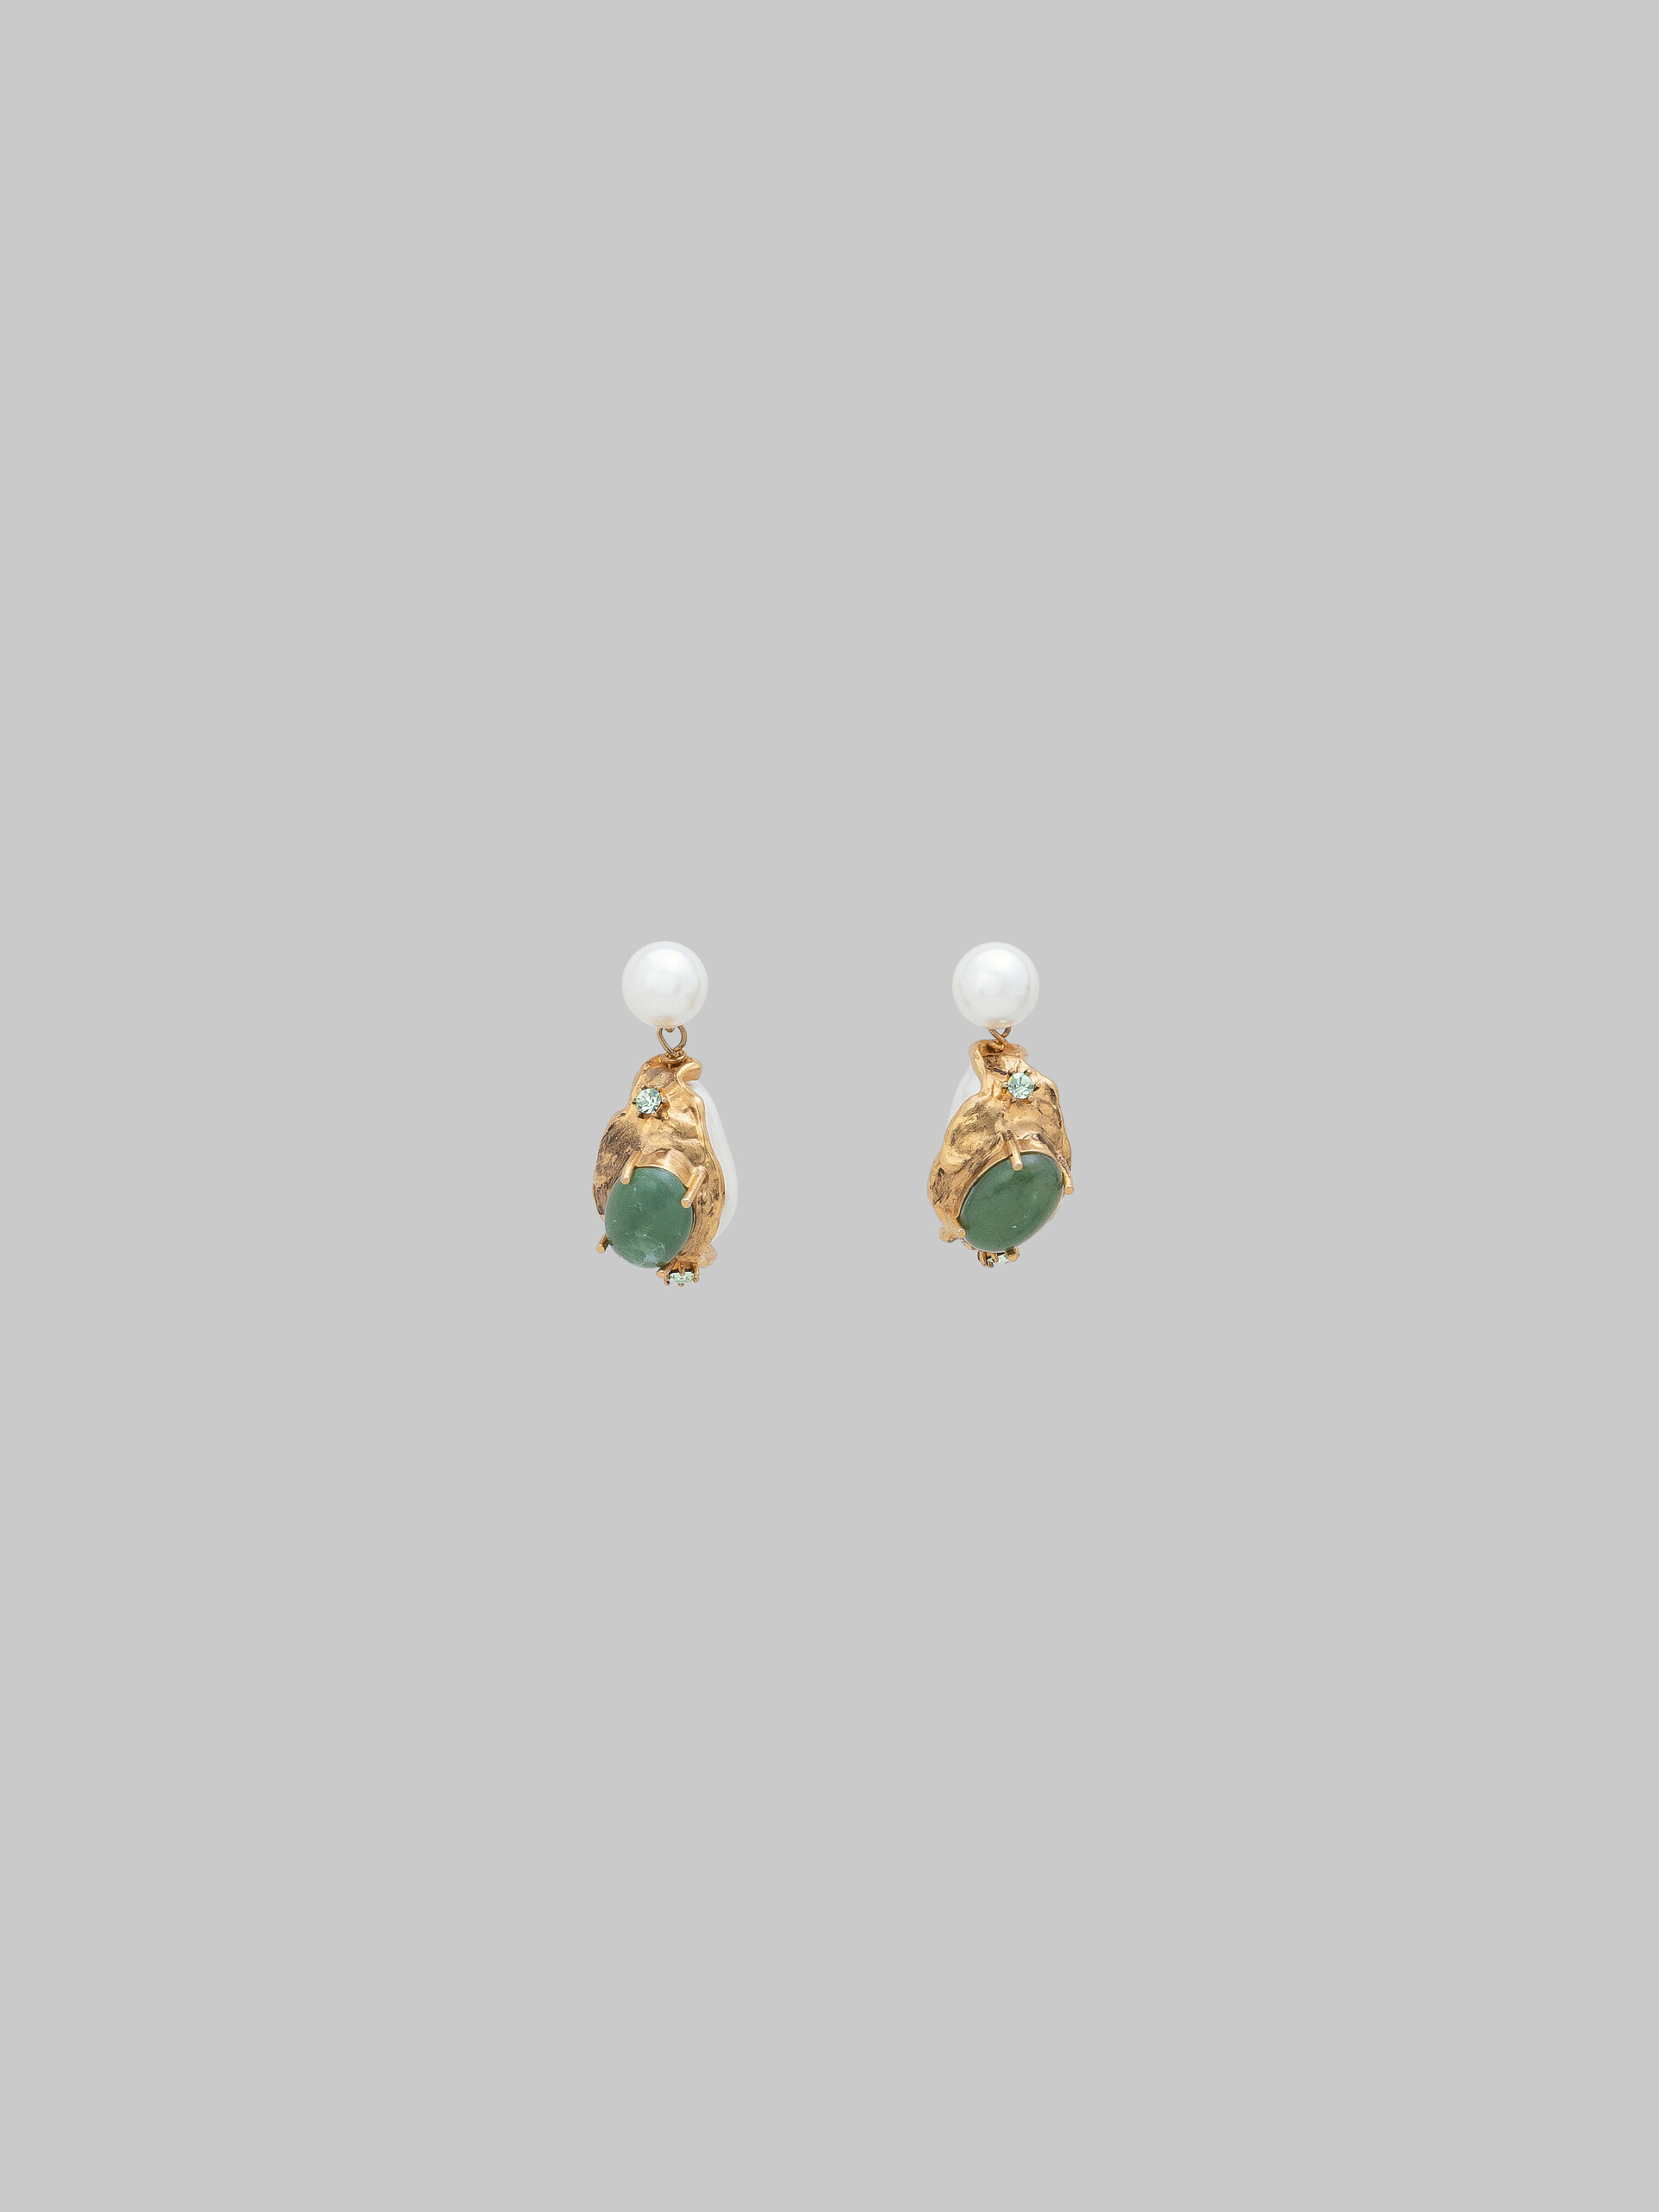 Pearl drop earrings with green gemstones - Earrings - Image 1